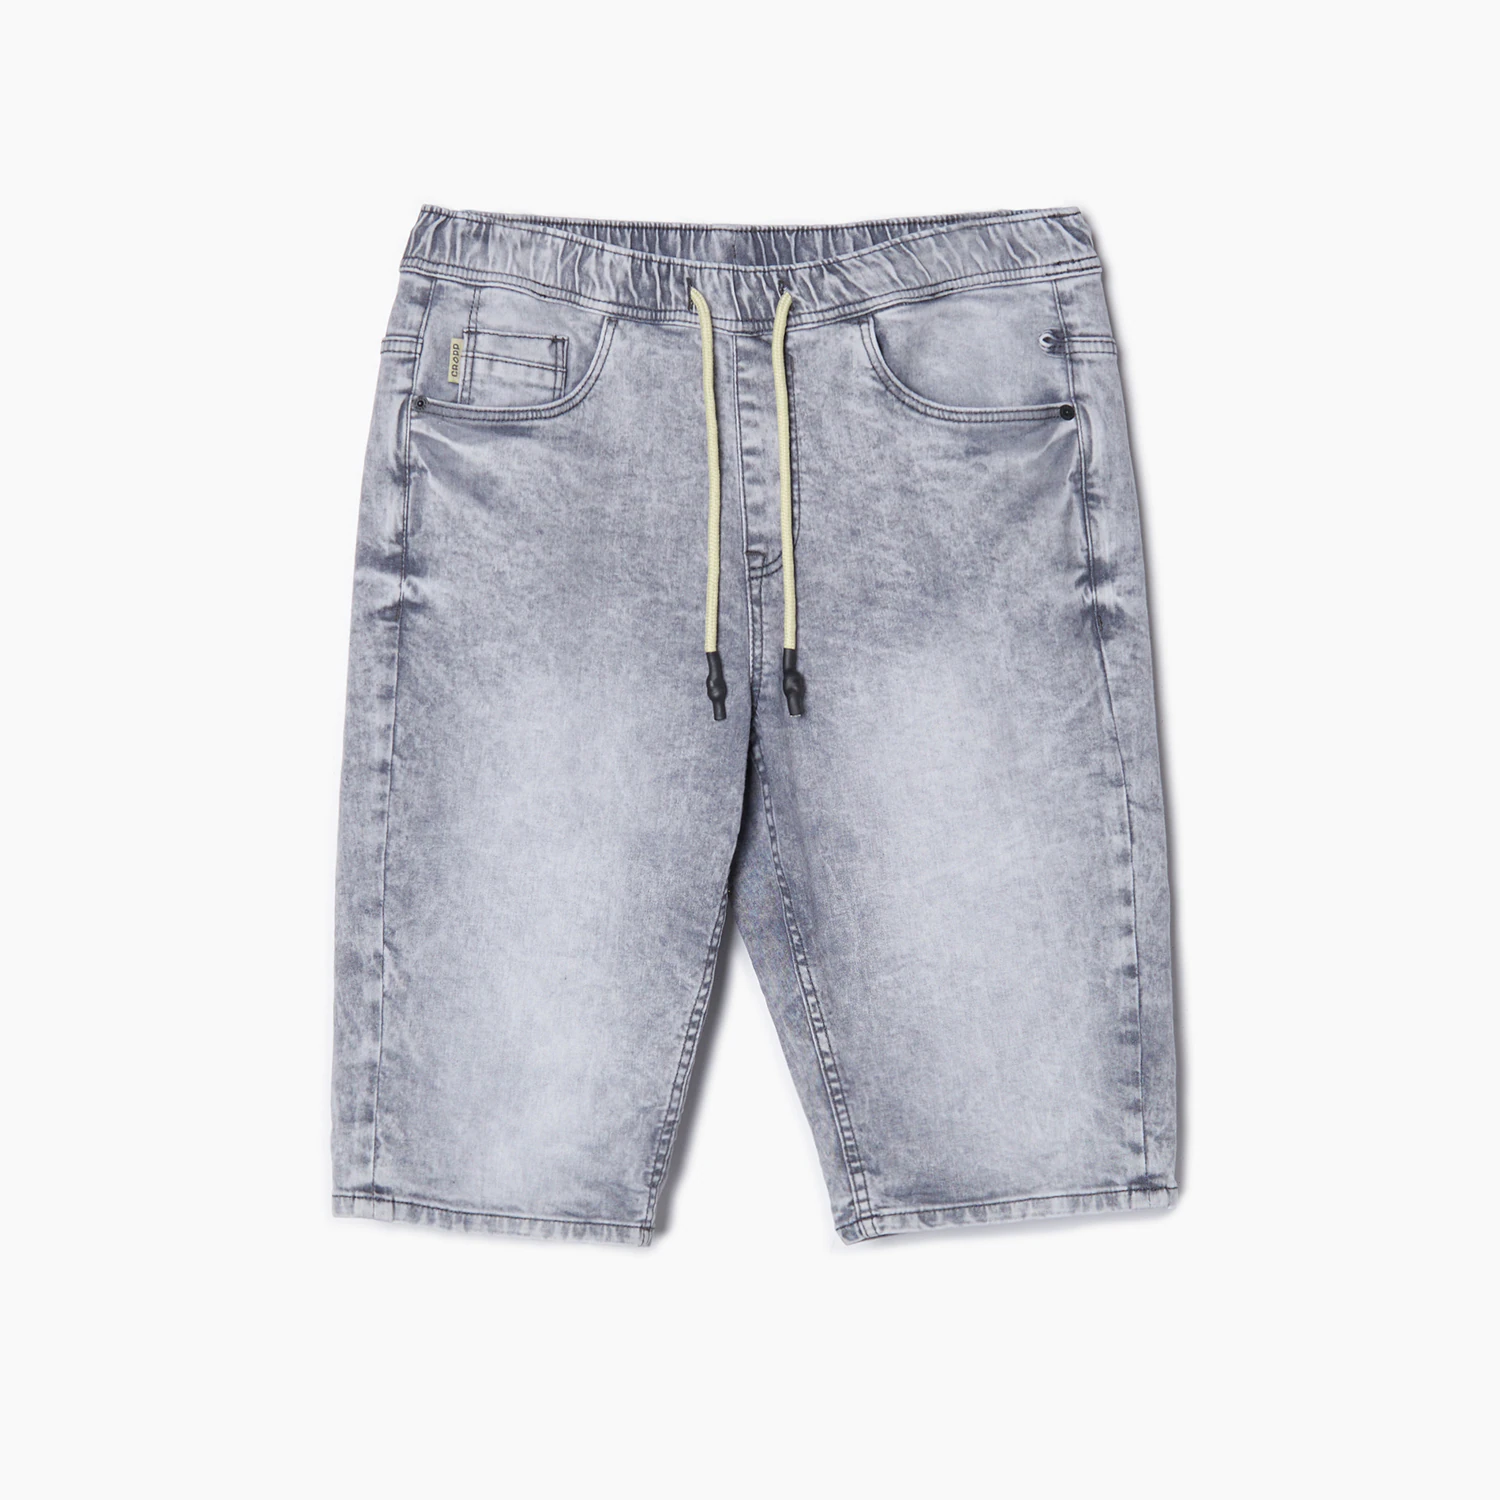 Cropp - Szare jeansowe szorty - Jasny szary Cropp